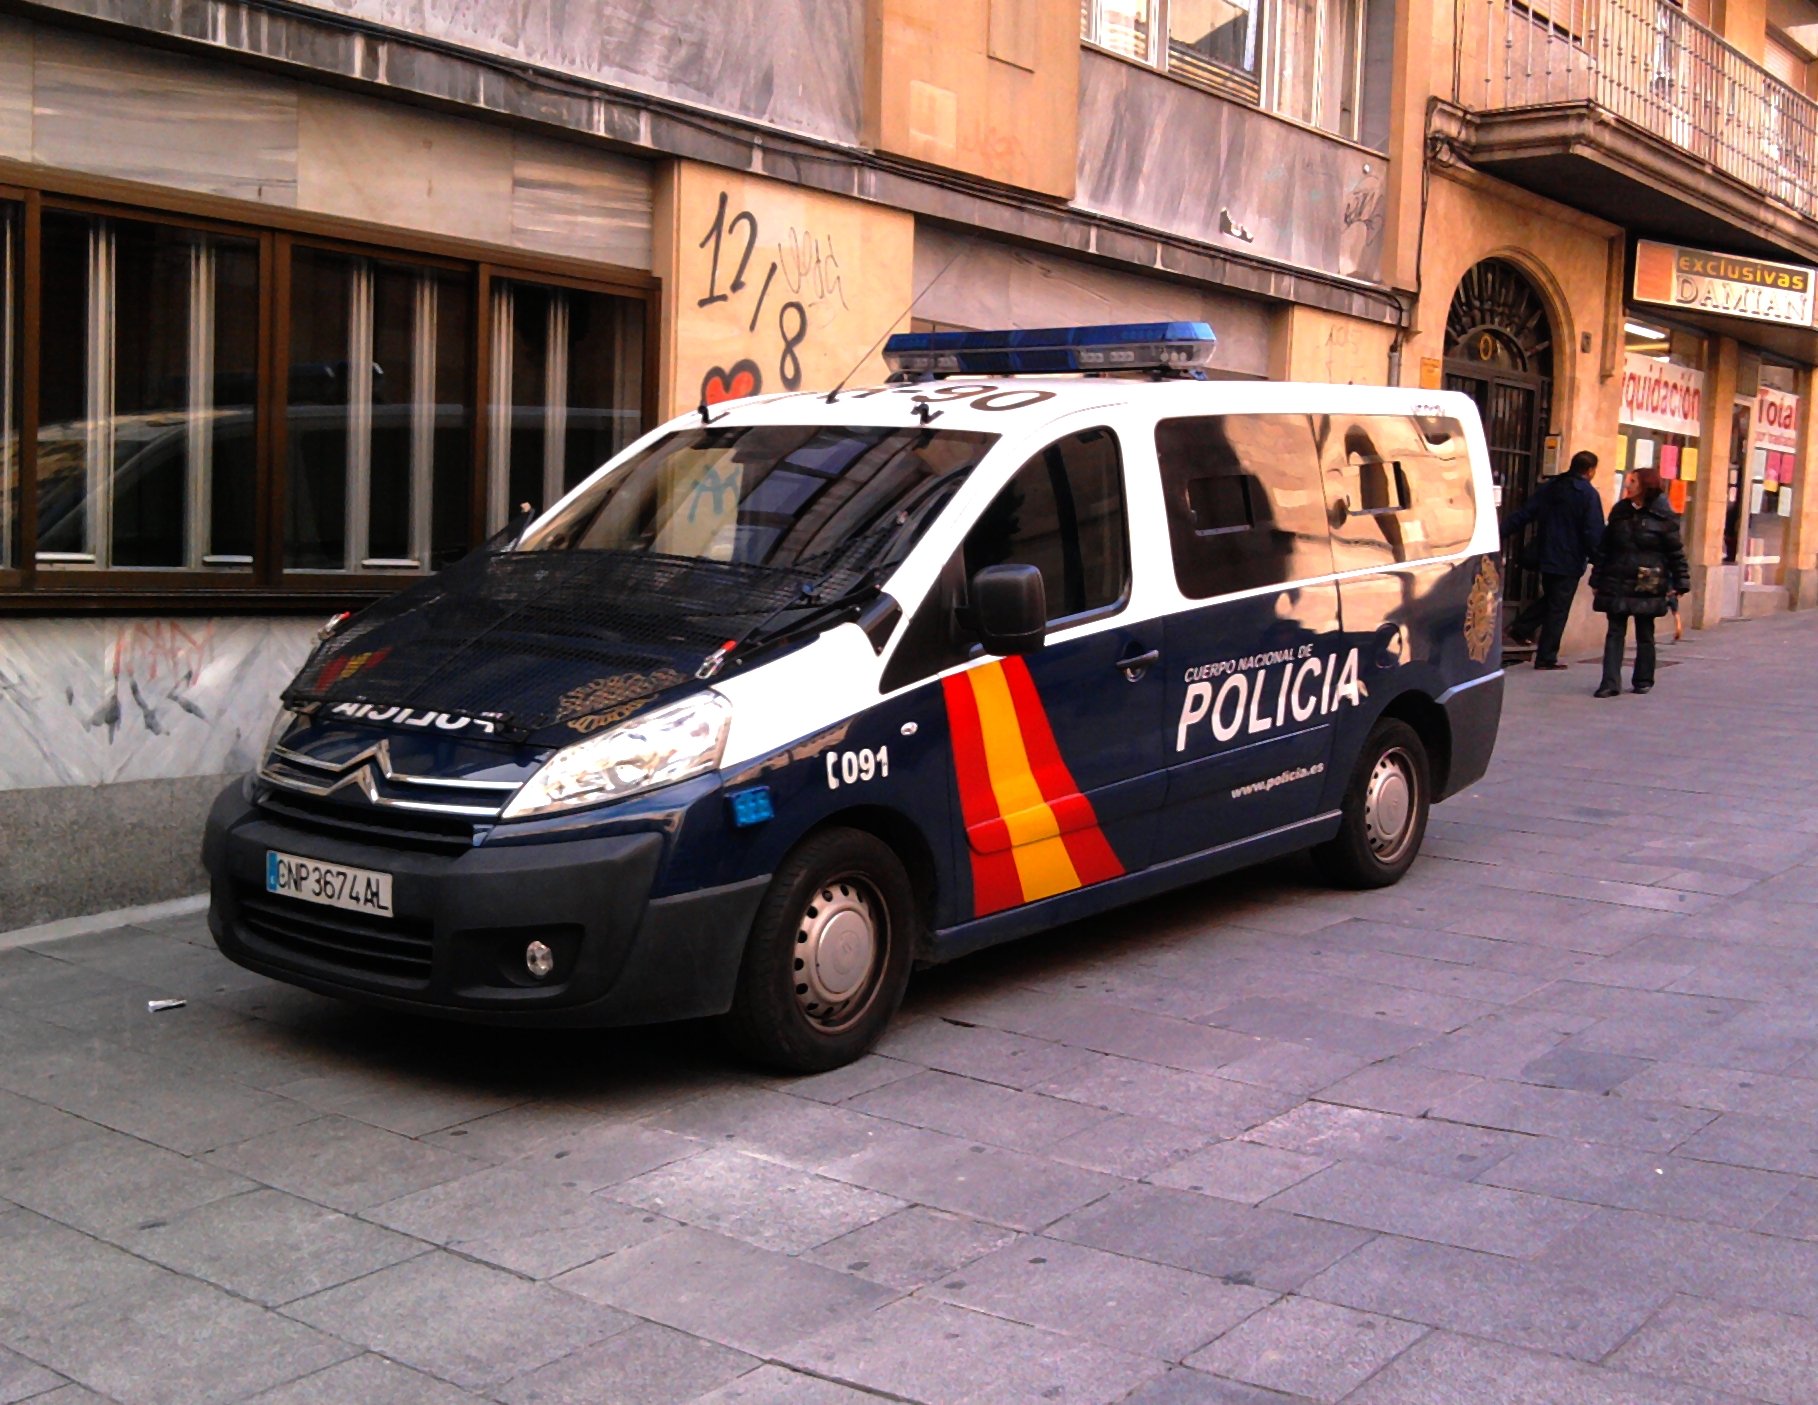 La policía española no quiere venir a Catalunya